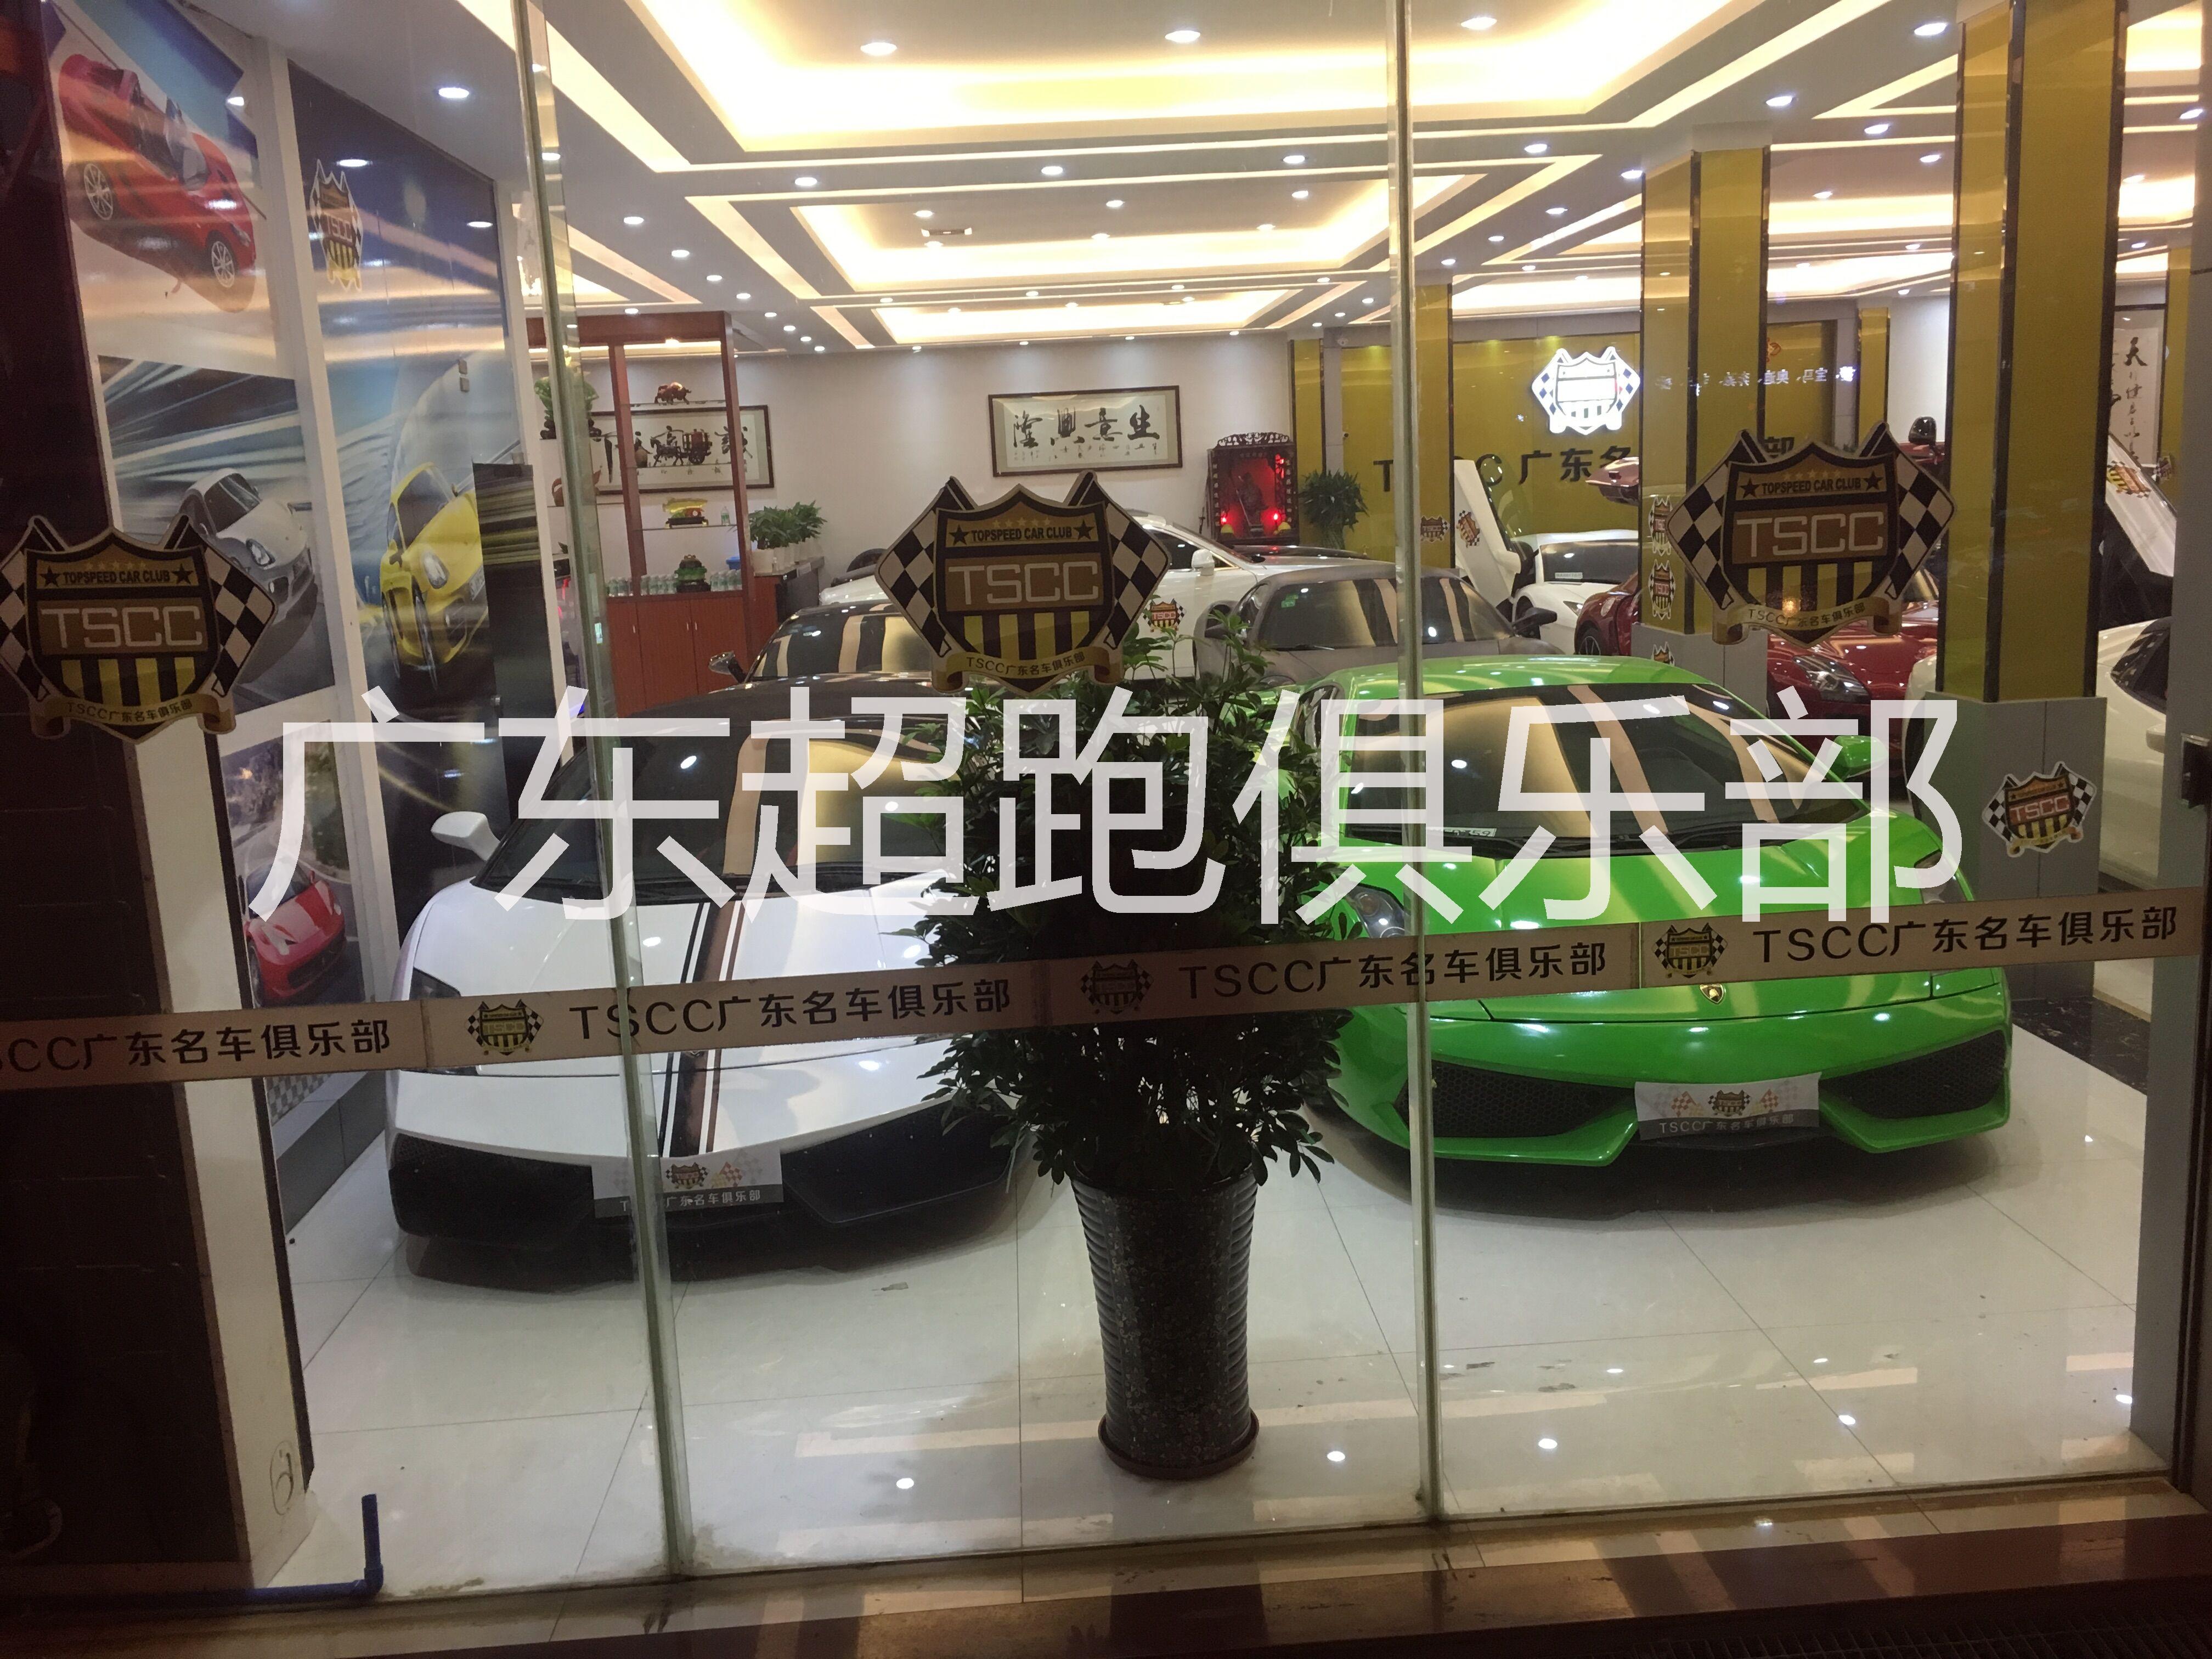 广州市TSCC广东名车俱乐部超跑租赁厂家